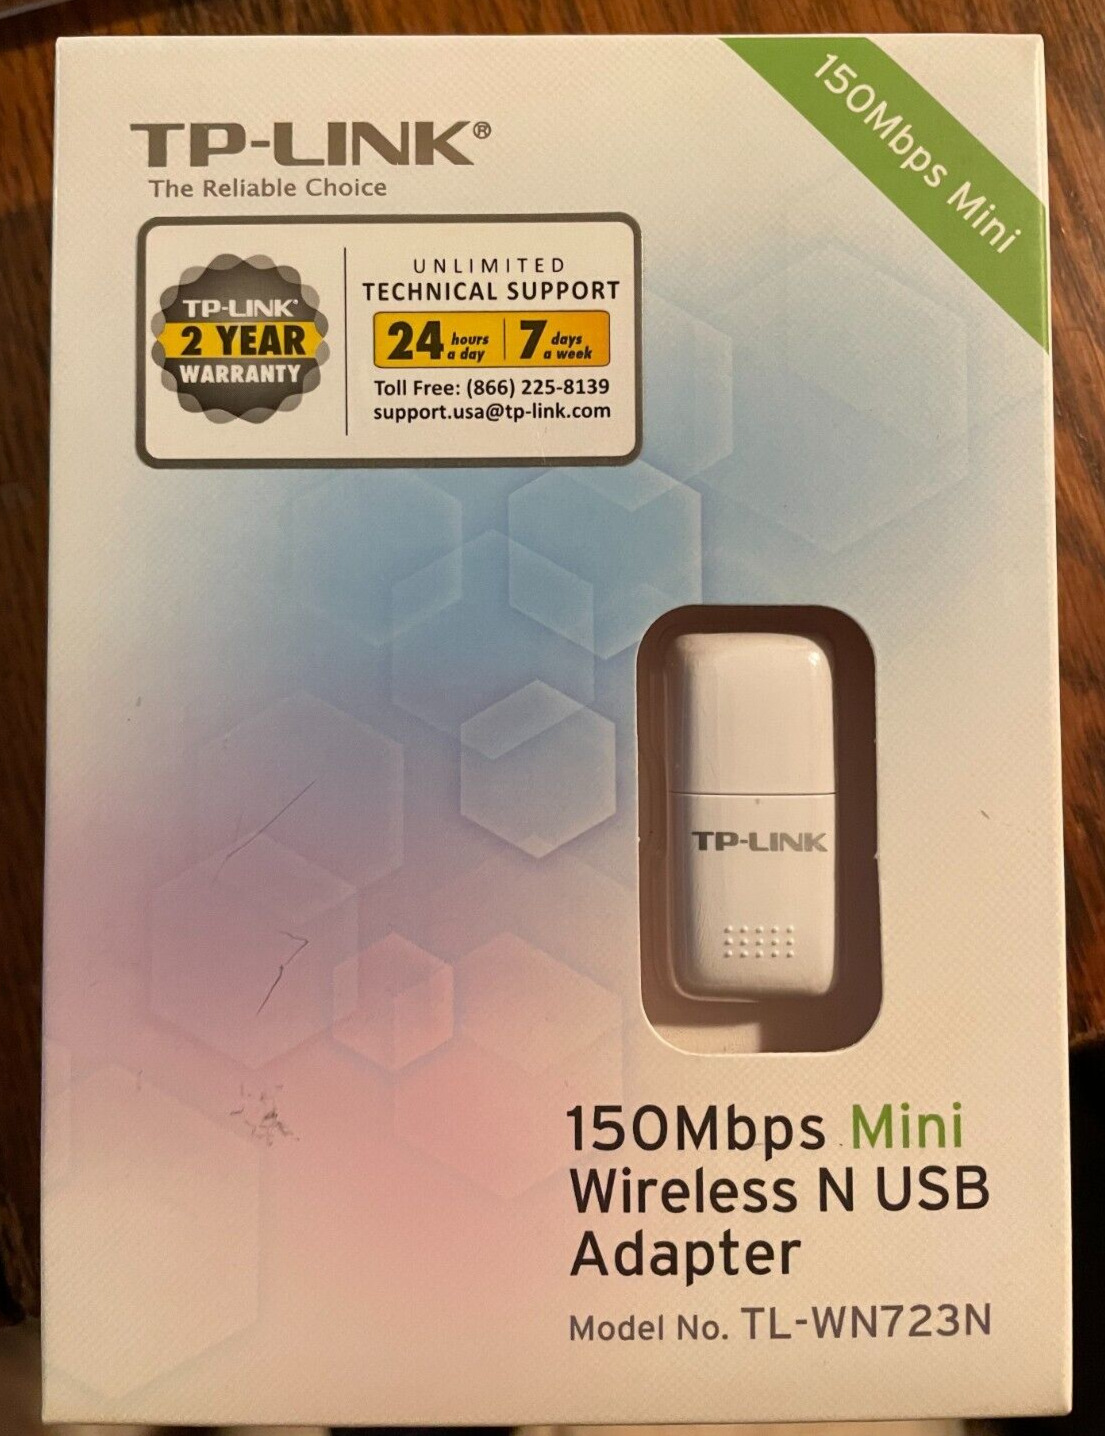 TP-LINK 150Mbps Mini Wireless N USB Adapter #TL-WN723N - NEW IN BOX